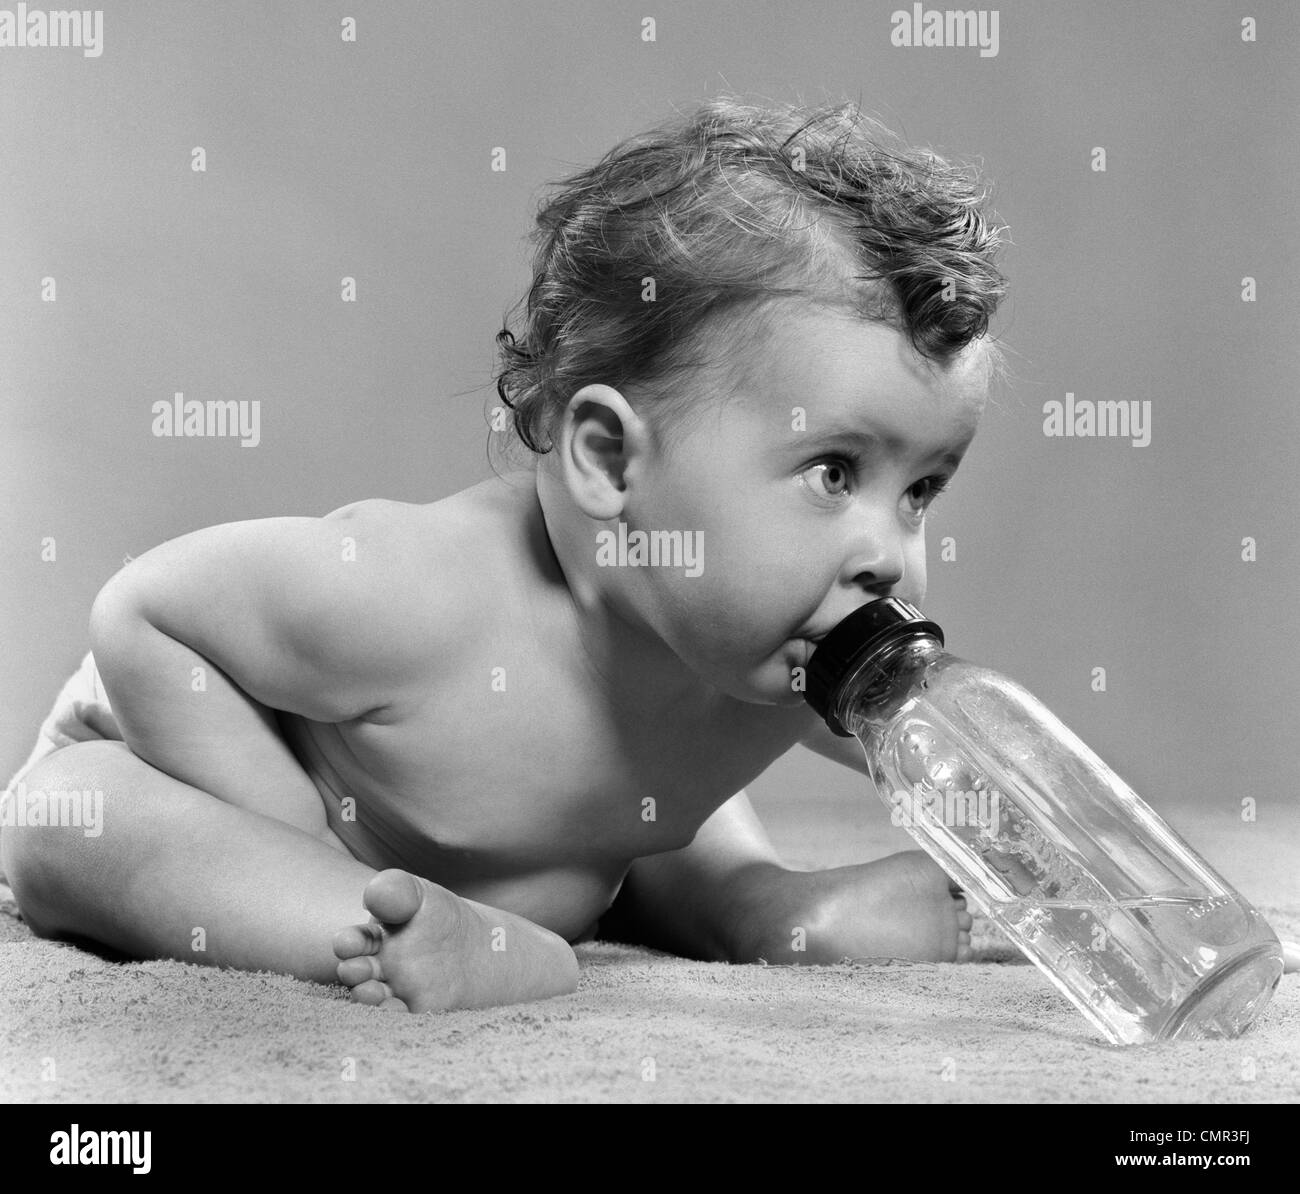 1950ER JAHRE BABY SITTING LEHNT SICH NACH VORNE TRINKEN AUS DER FLASCHE STUDIO INDOOR Stockfoto